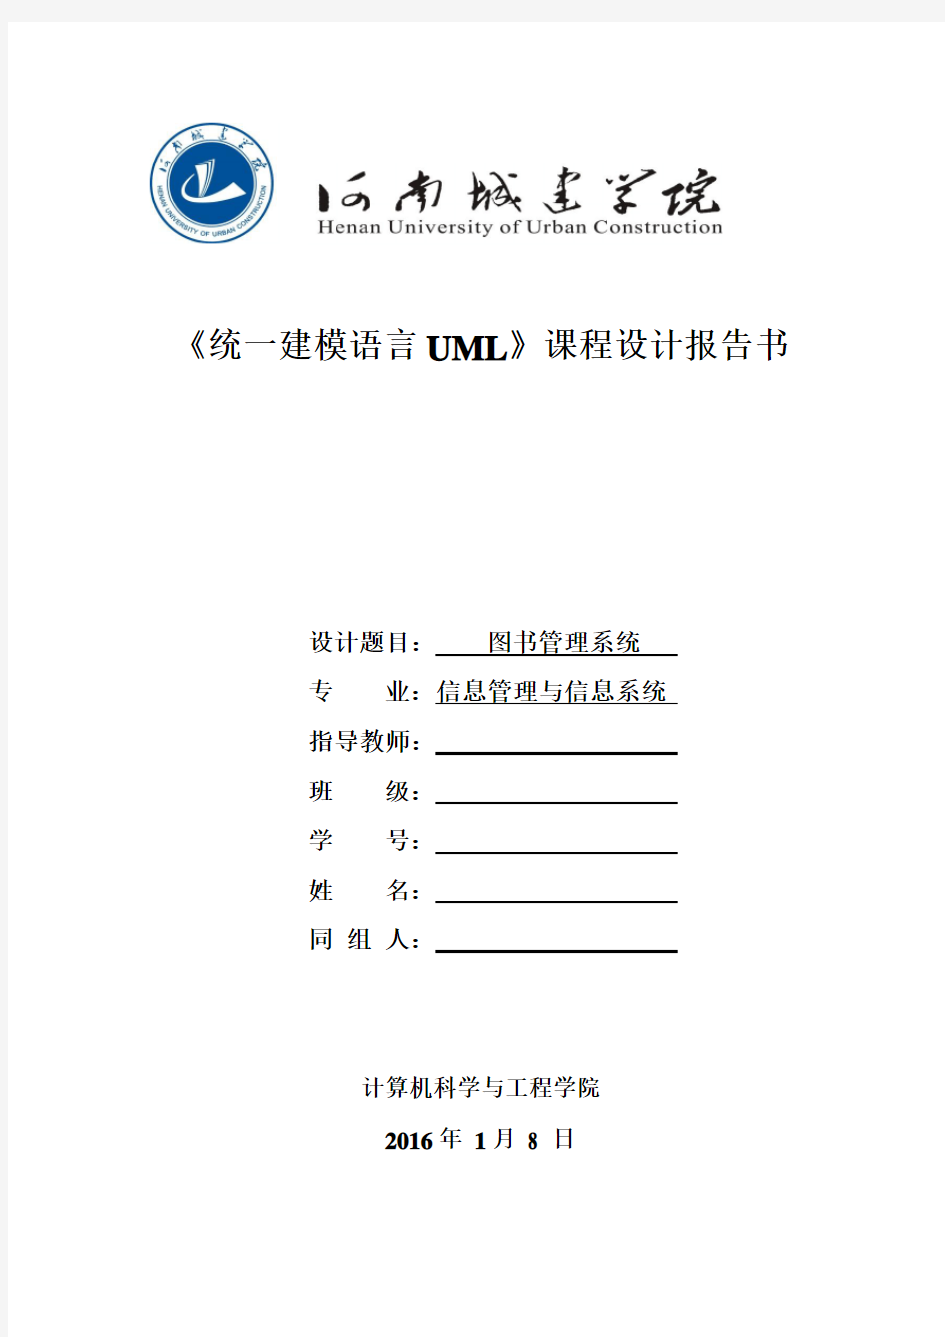 UML图书管理系统报告